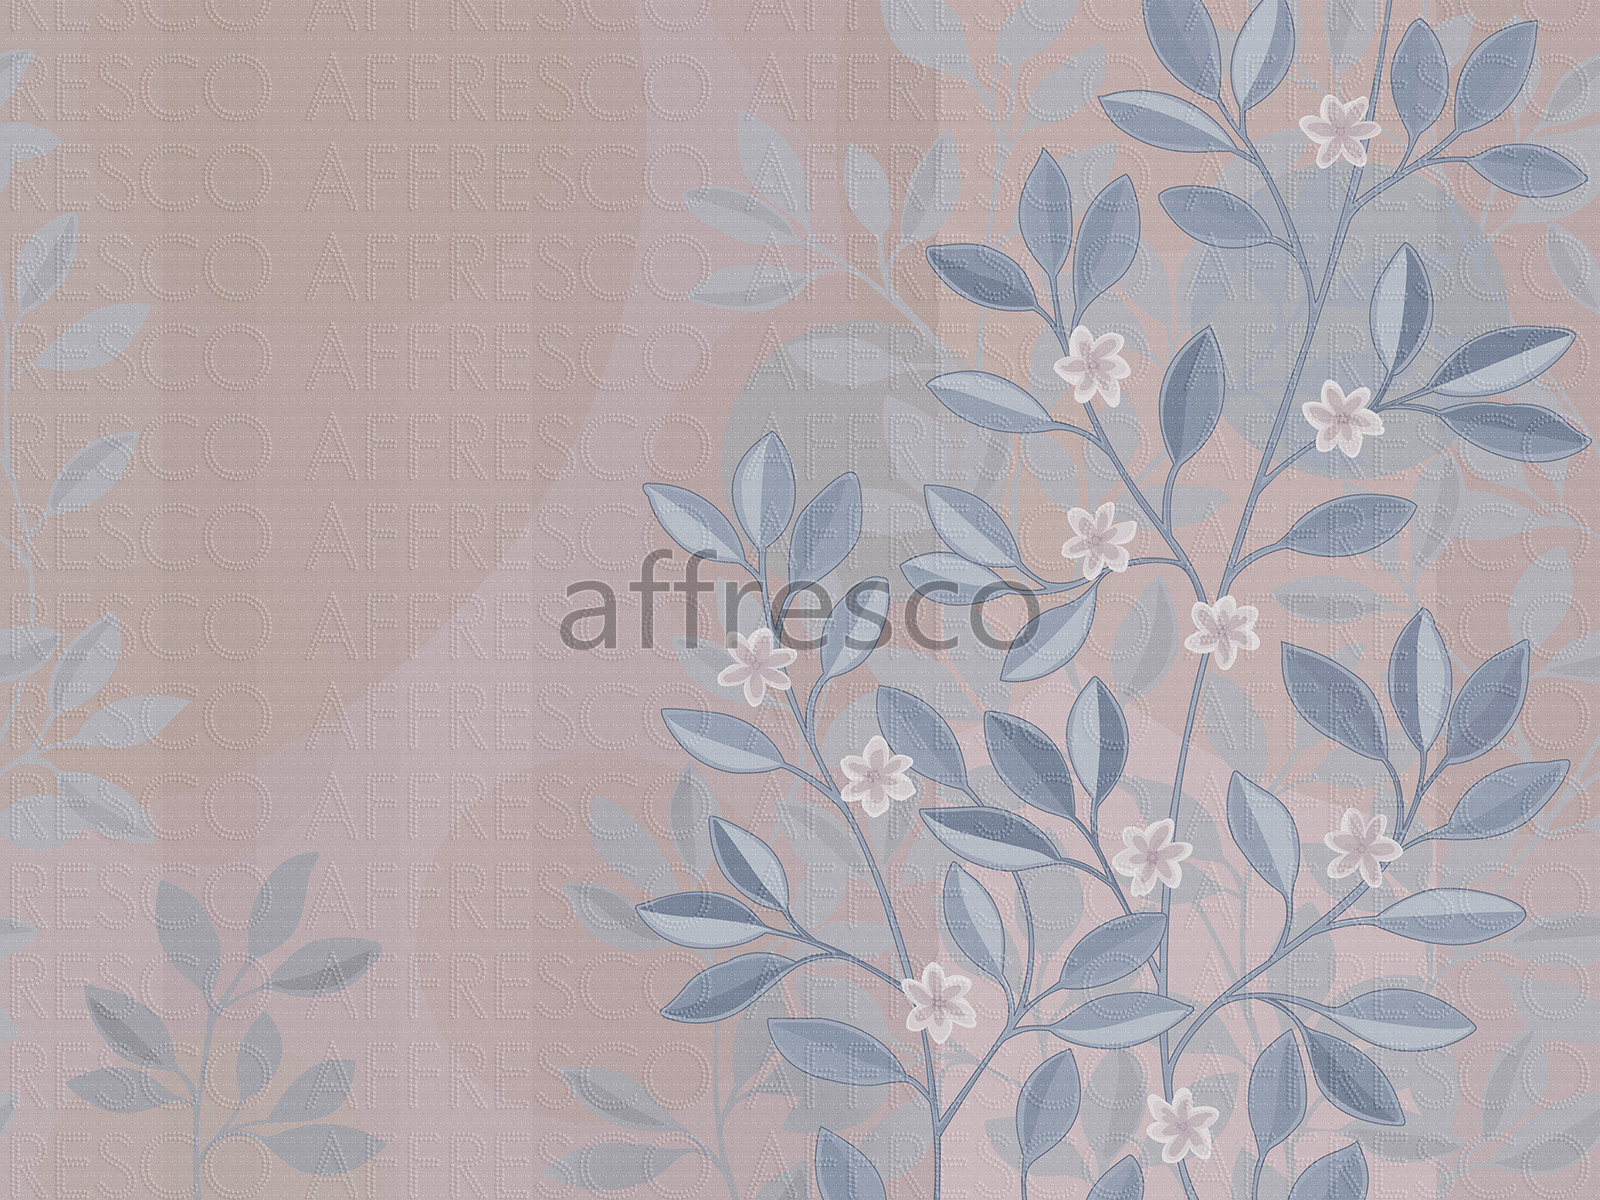 AF2196-COL3 | Fantasy | Affresco Factory